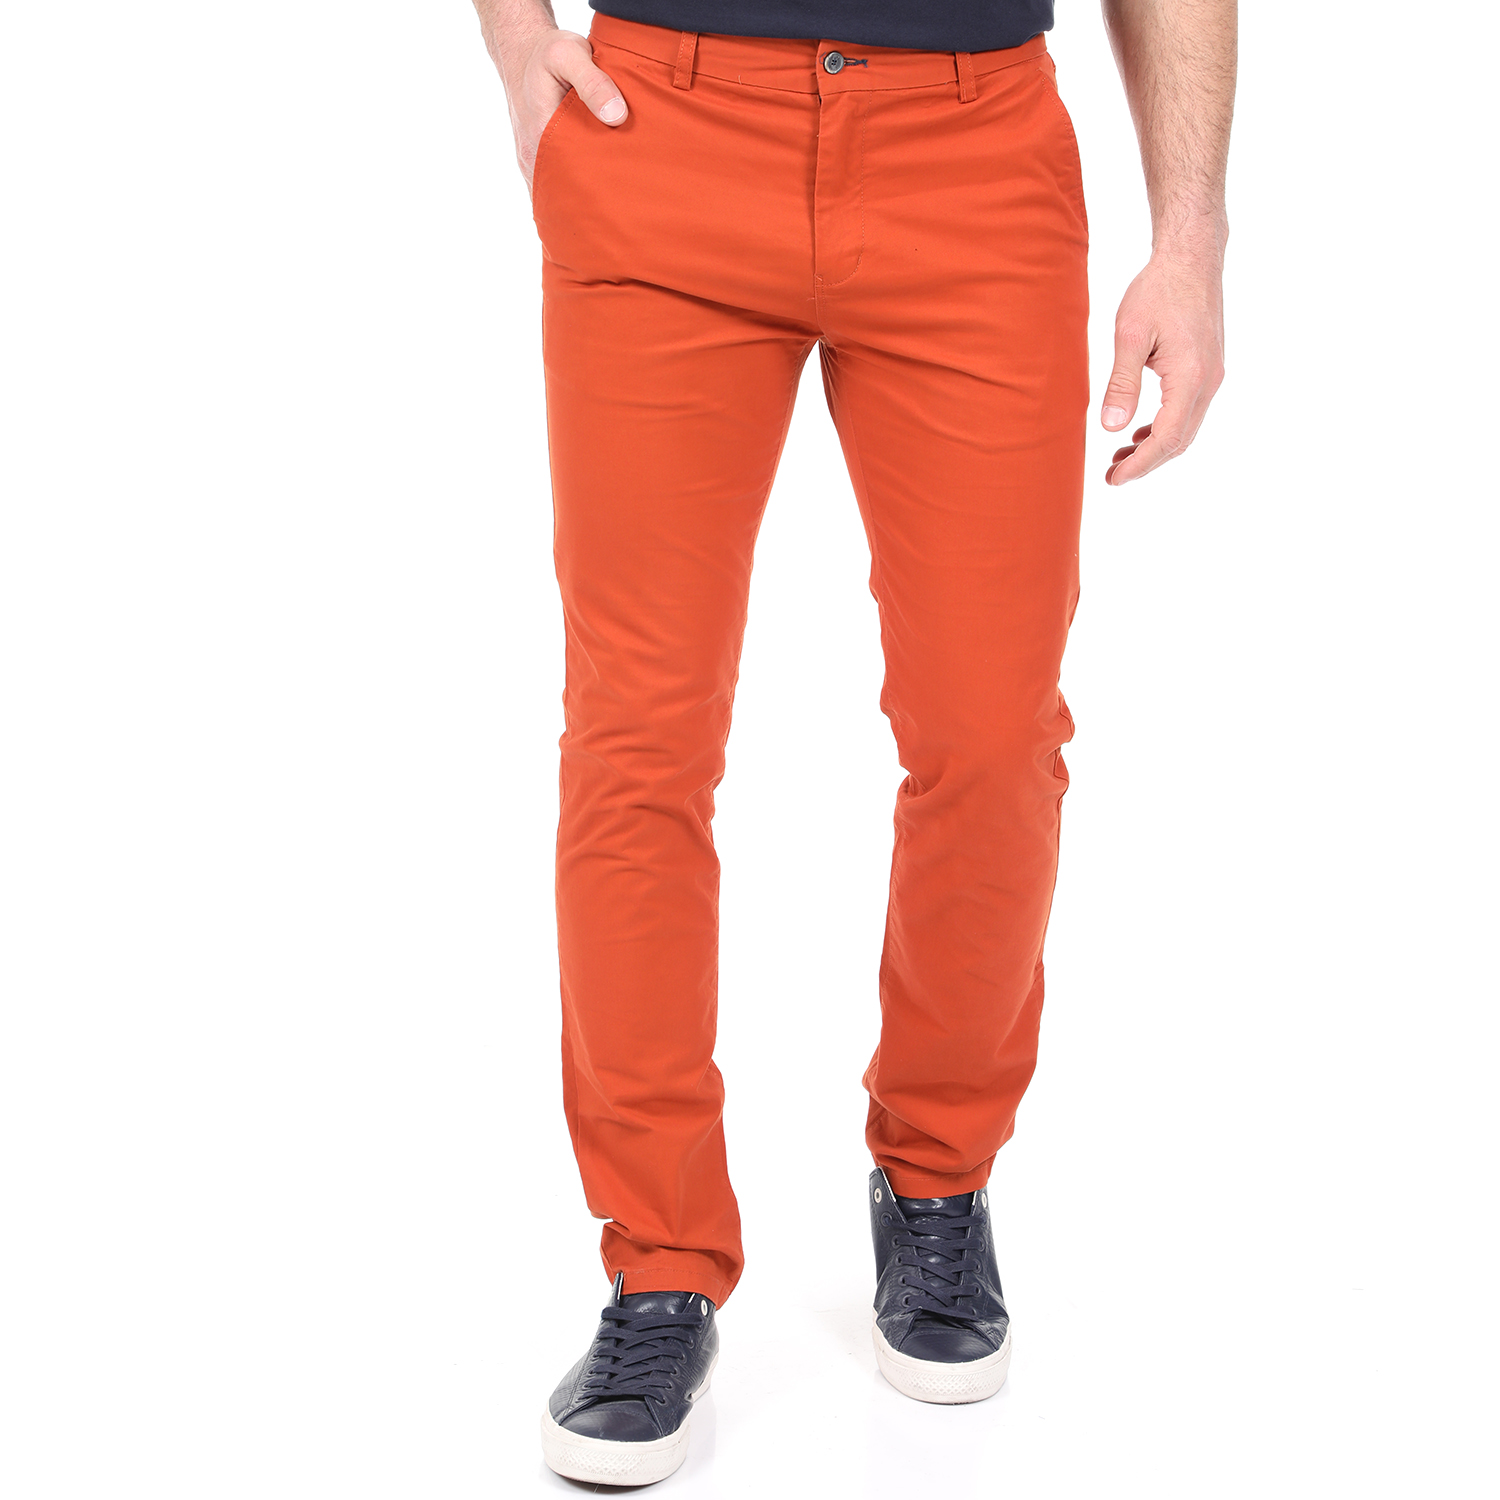 Ανδρικά/Ρούχα/Παντελόνια/Chinos DORS - Ανδρικό chino παντελόνι DORS πορτοκαλί